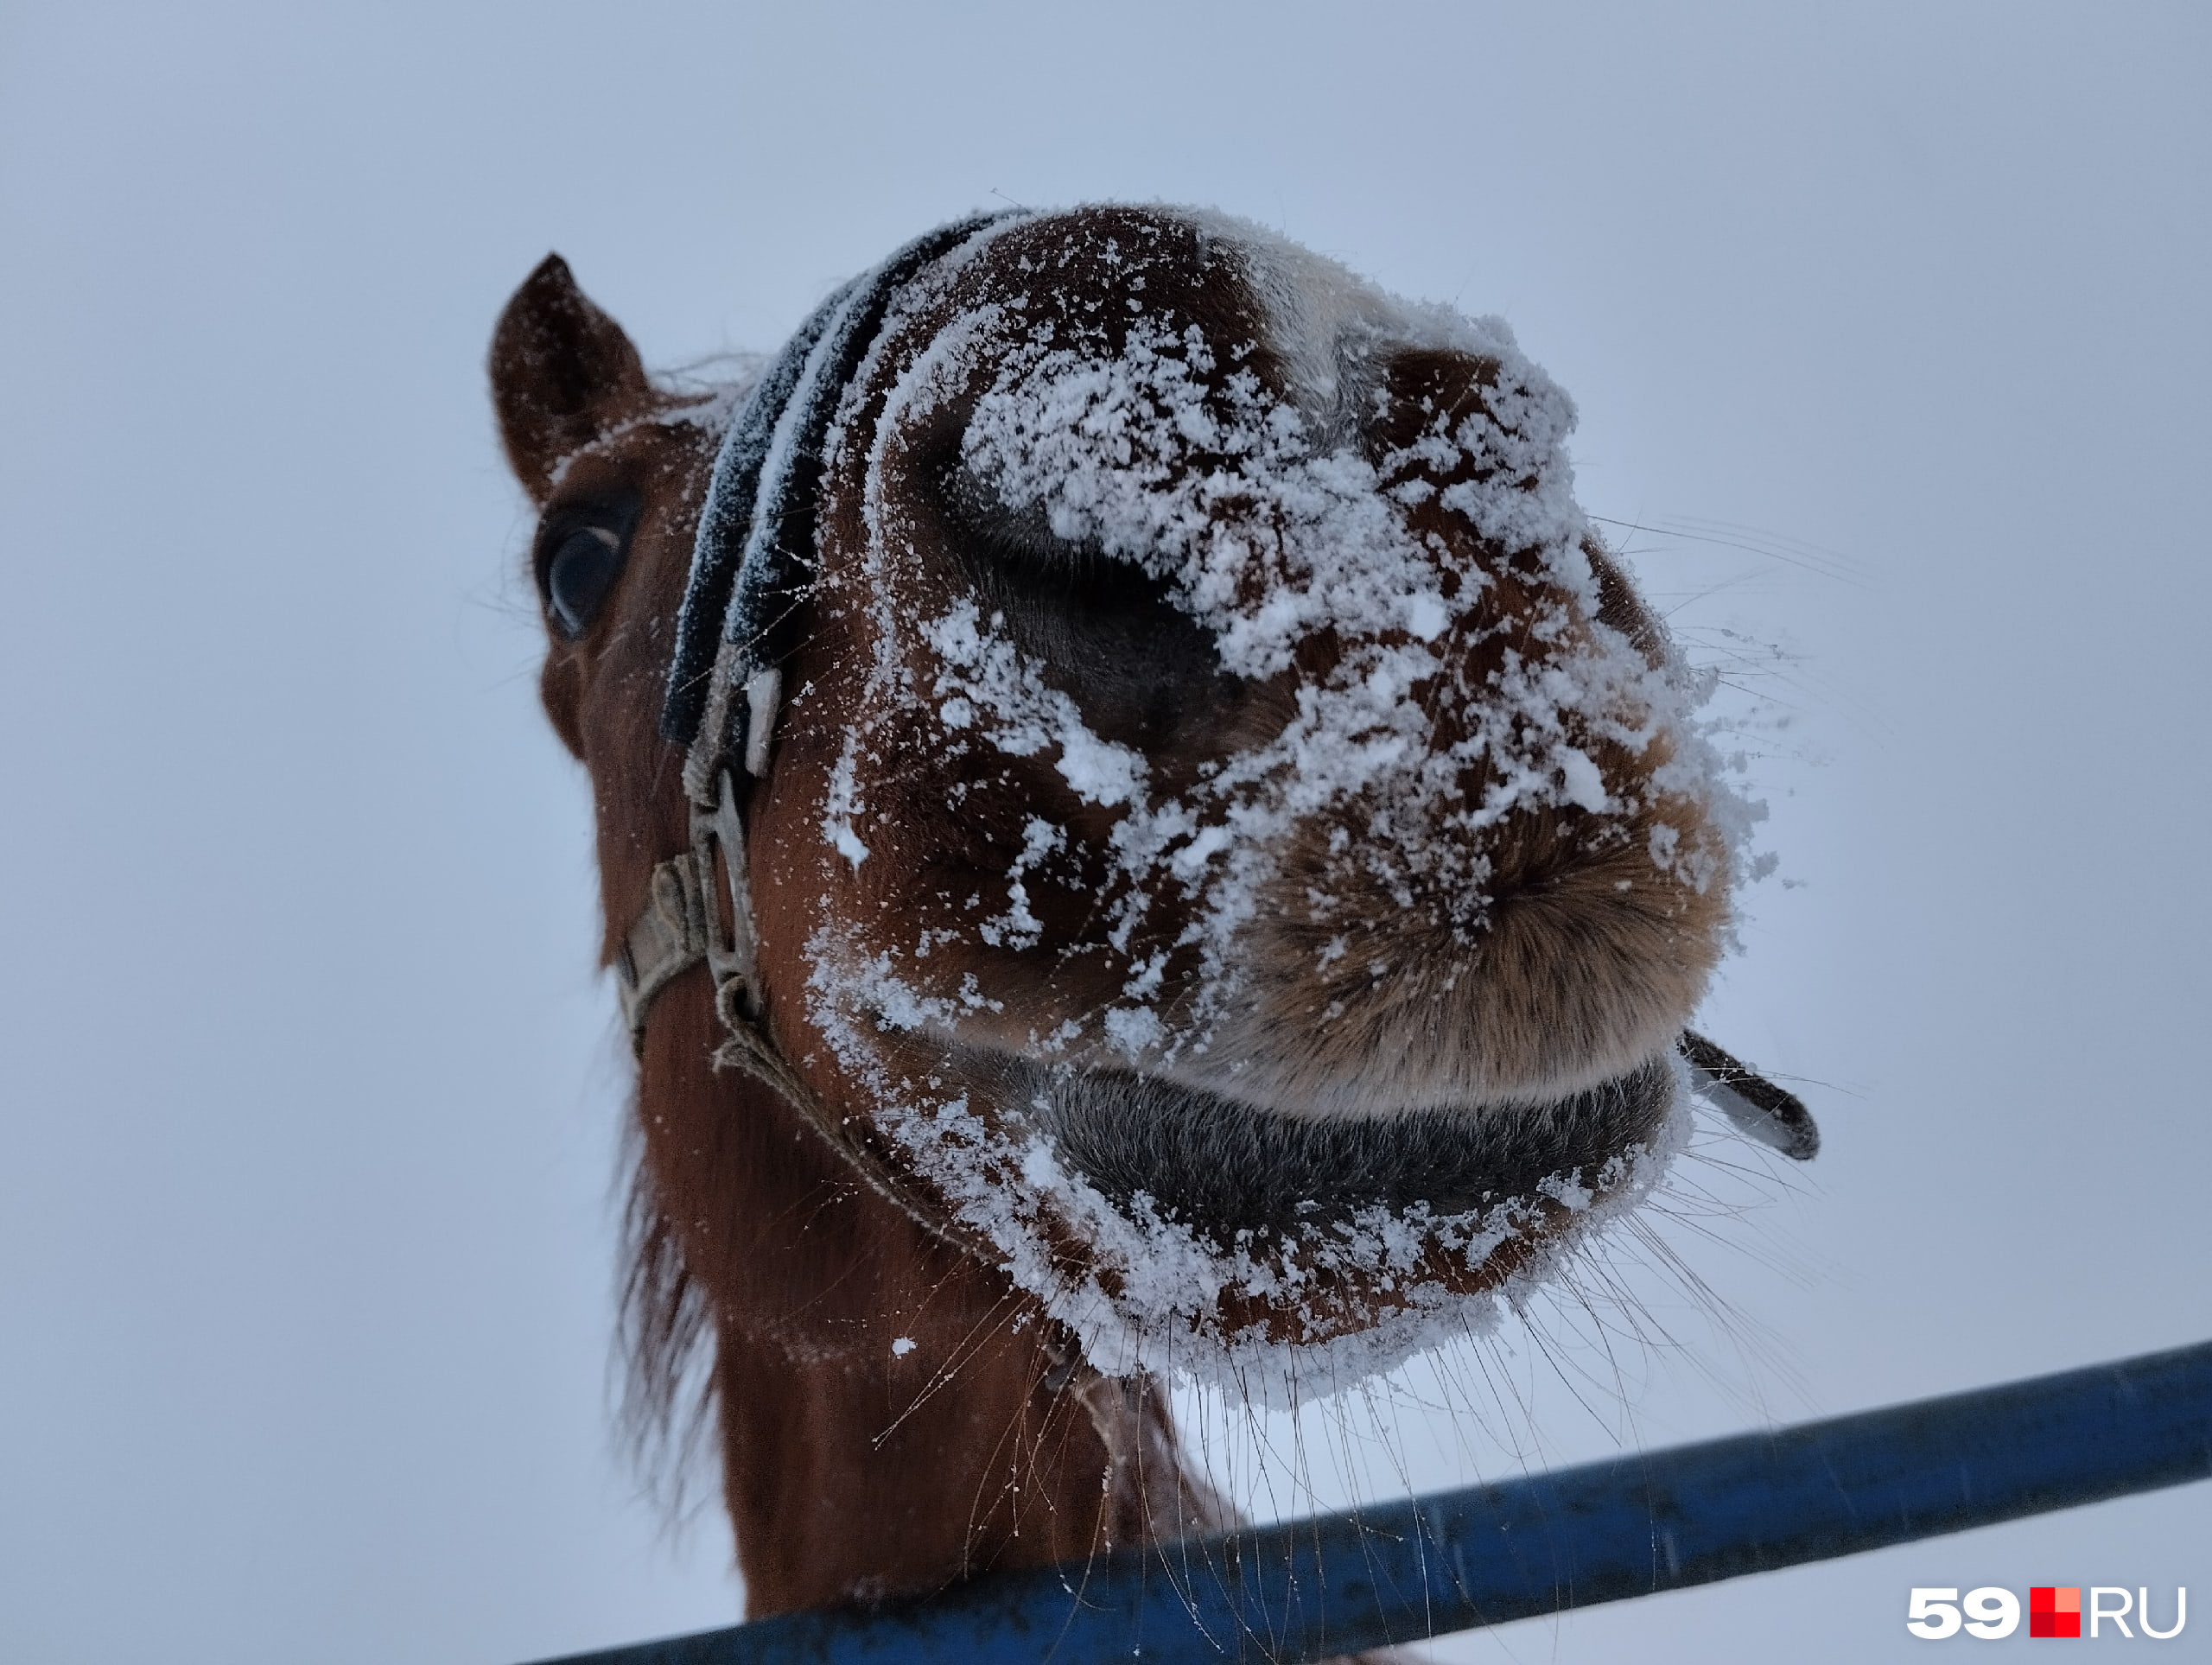 Это конь Иртыш из Усть-Качи, он, как говорят, рад снегу